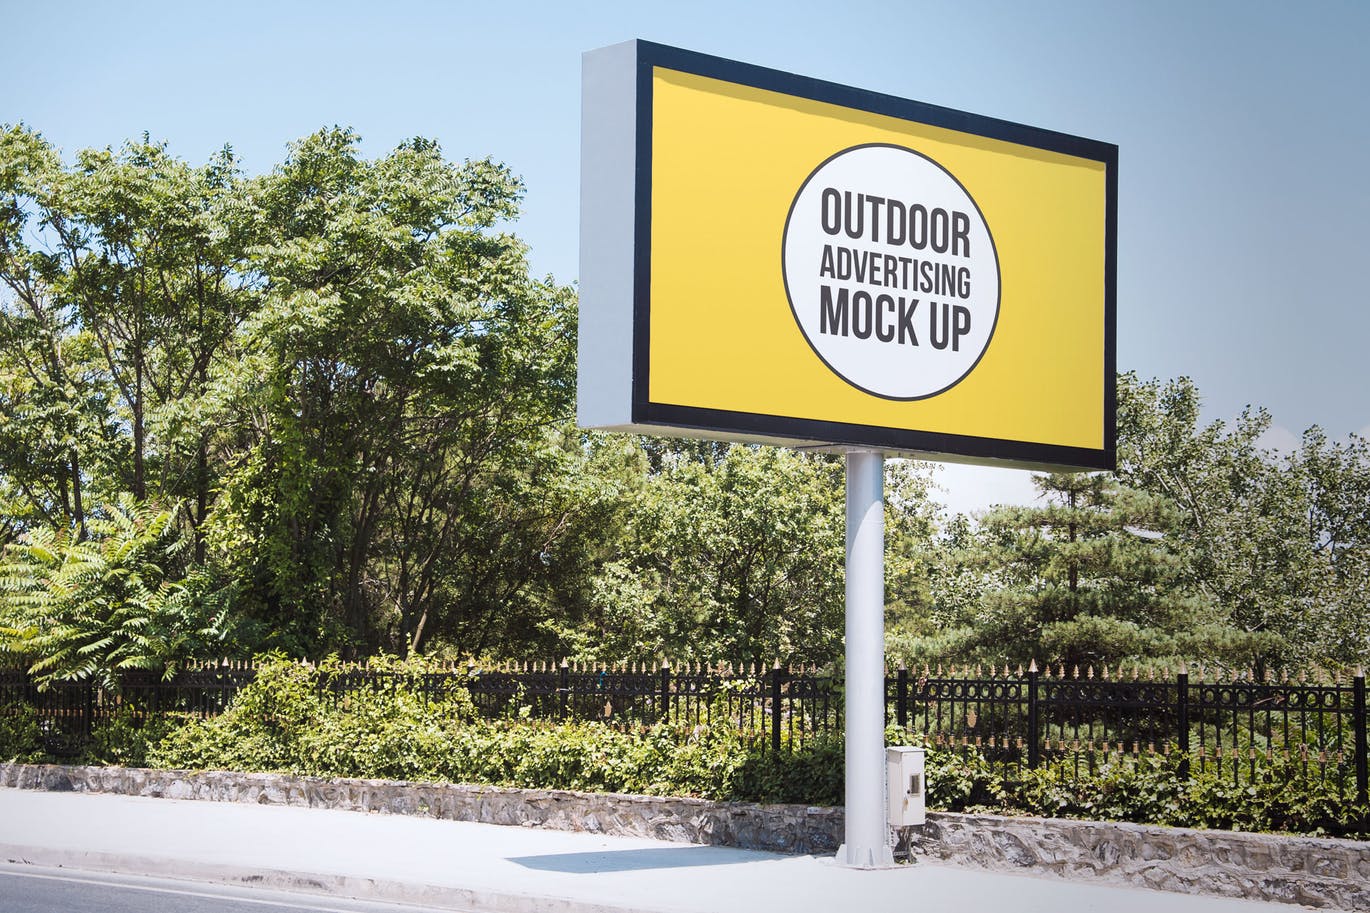 高速公路广告牌广告设计效果图预览样机#10 Outdoor Advertisement Mockup Template #10插图